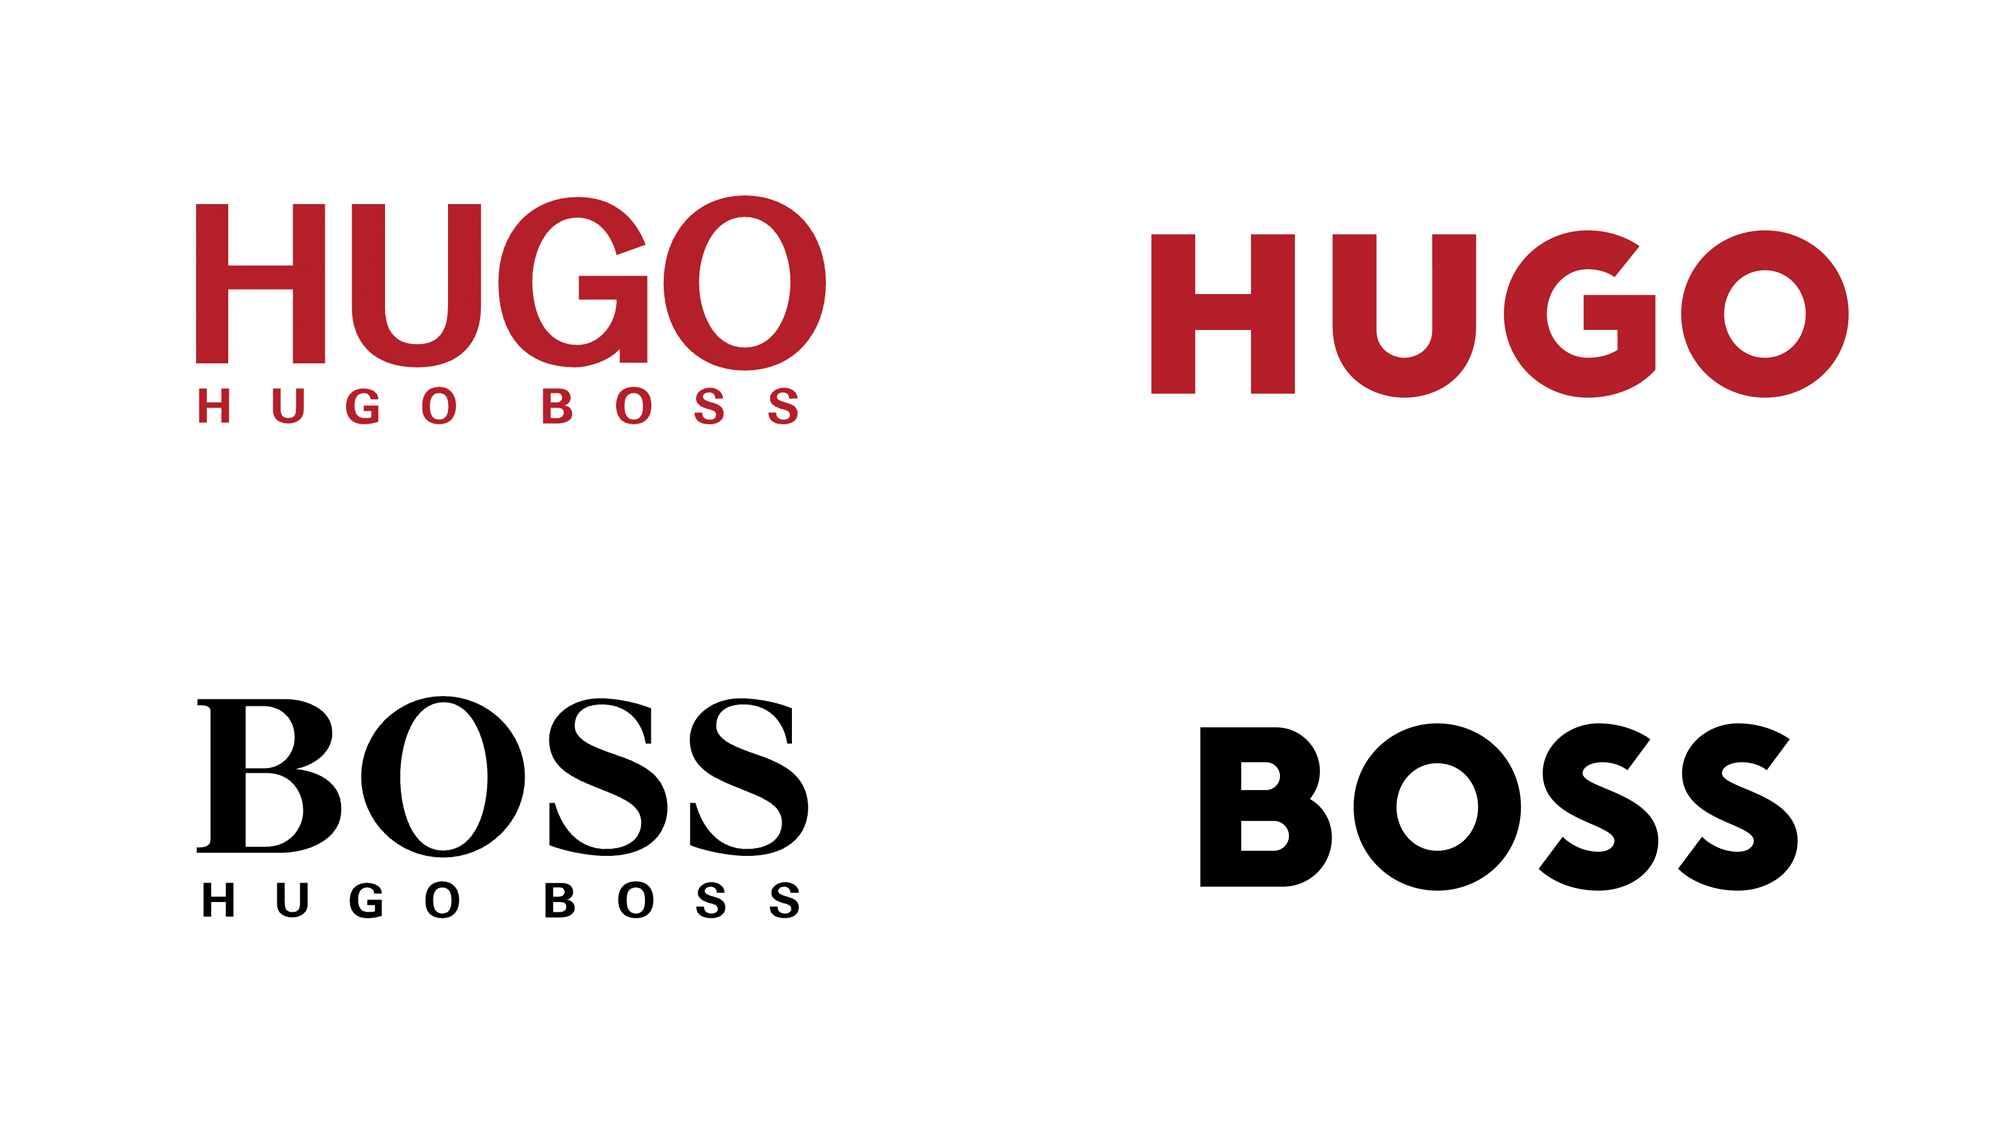 New Logos for HUGO BOSS, HUGO, and BOSS